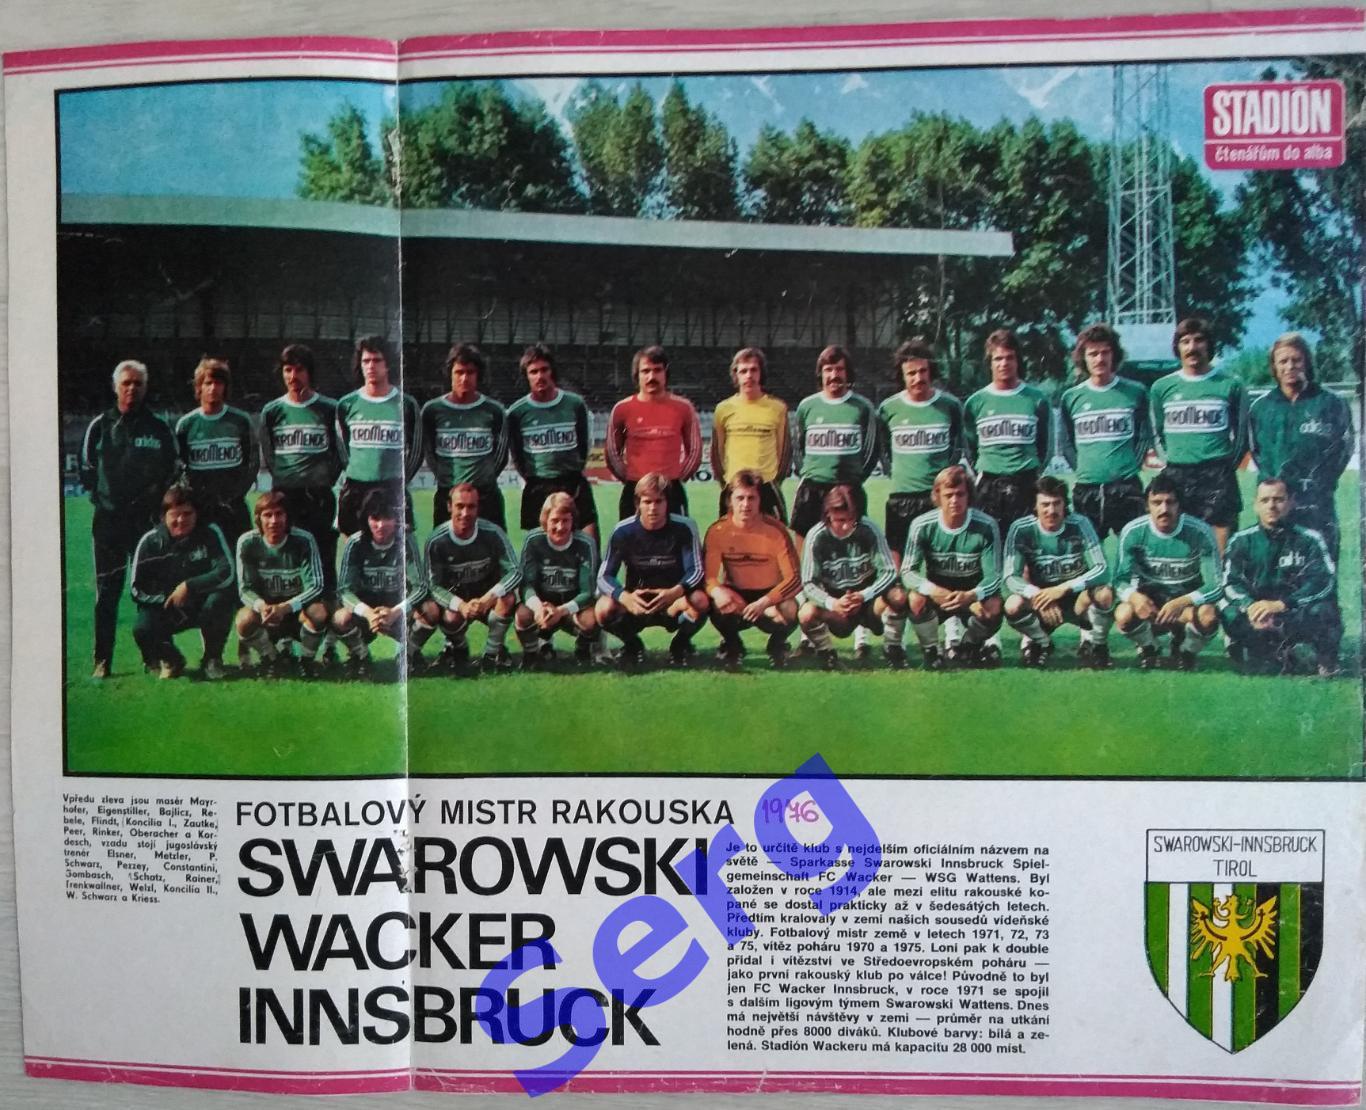 Постер Сваровски Ваккер Инсбрук, Австрия из журнала Стадион (Stadion)